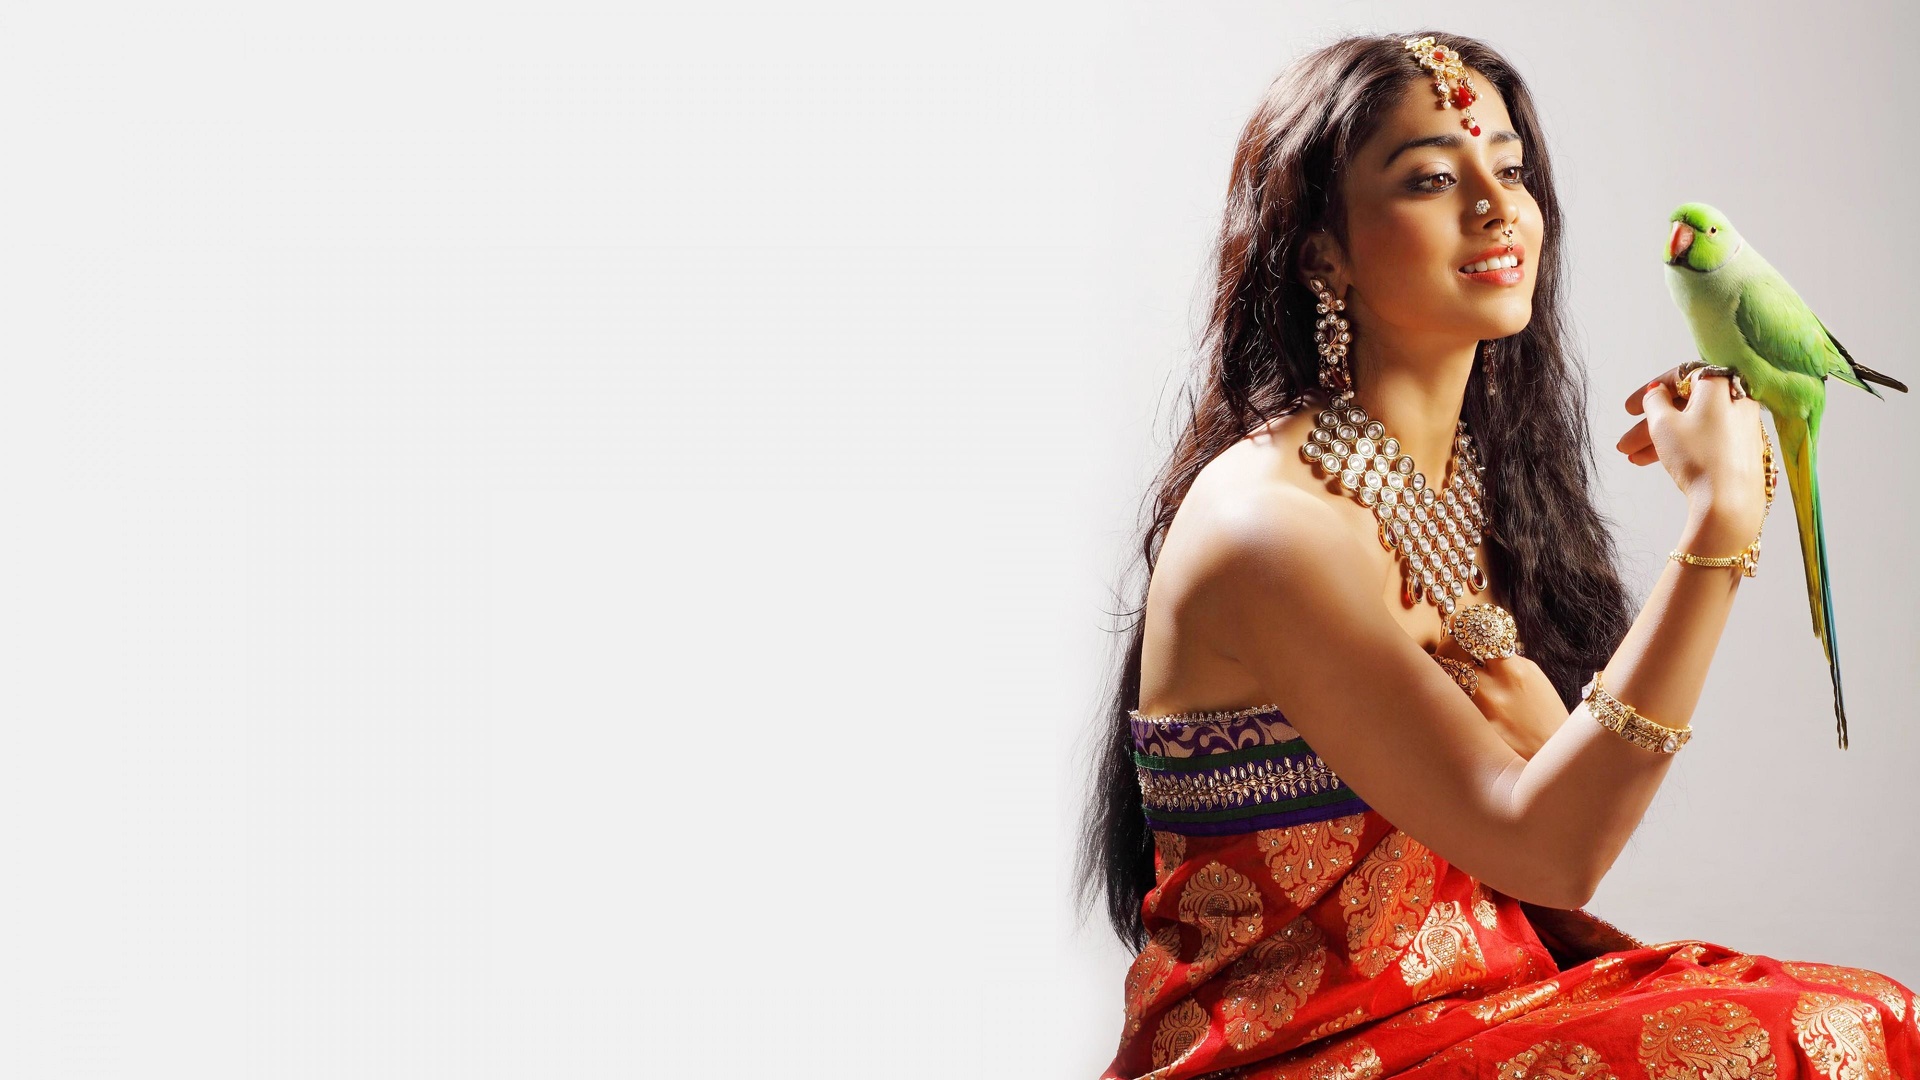 Femme indienne en habits traditionnels avec un perroquet.jpg